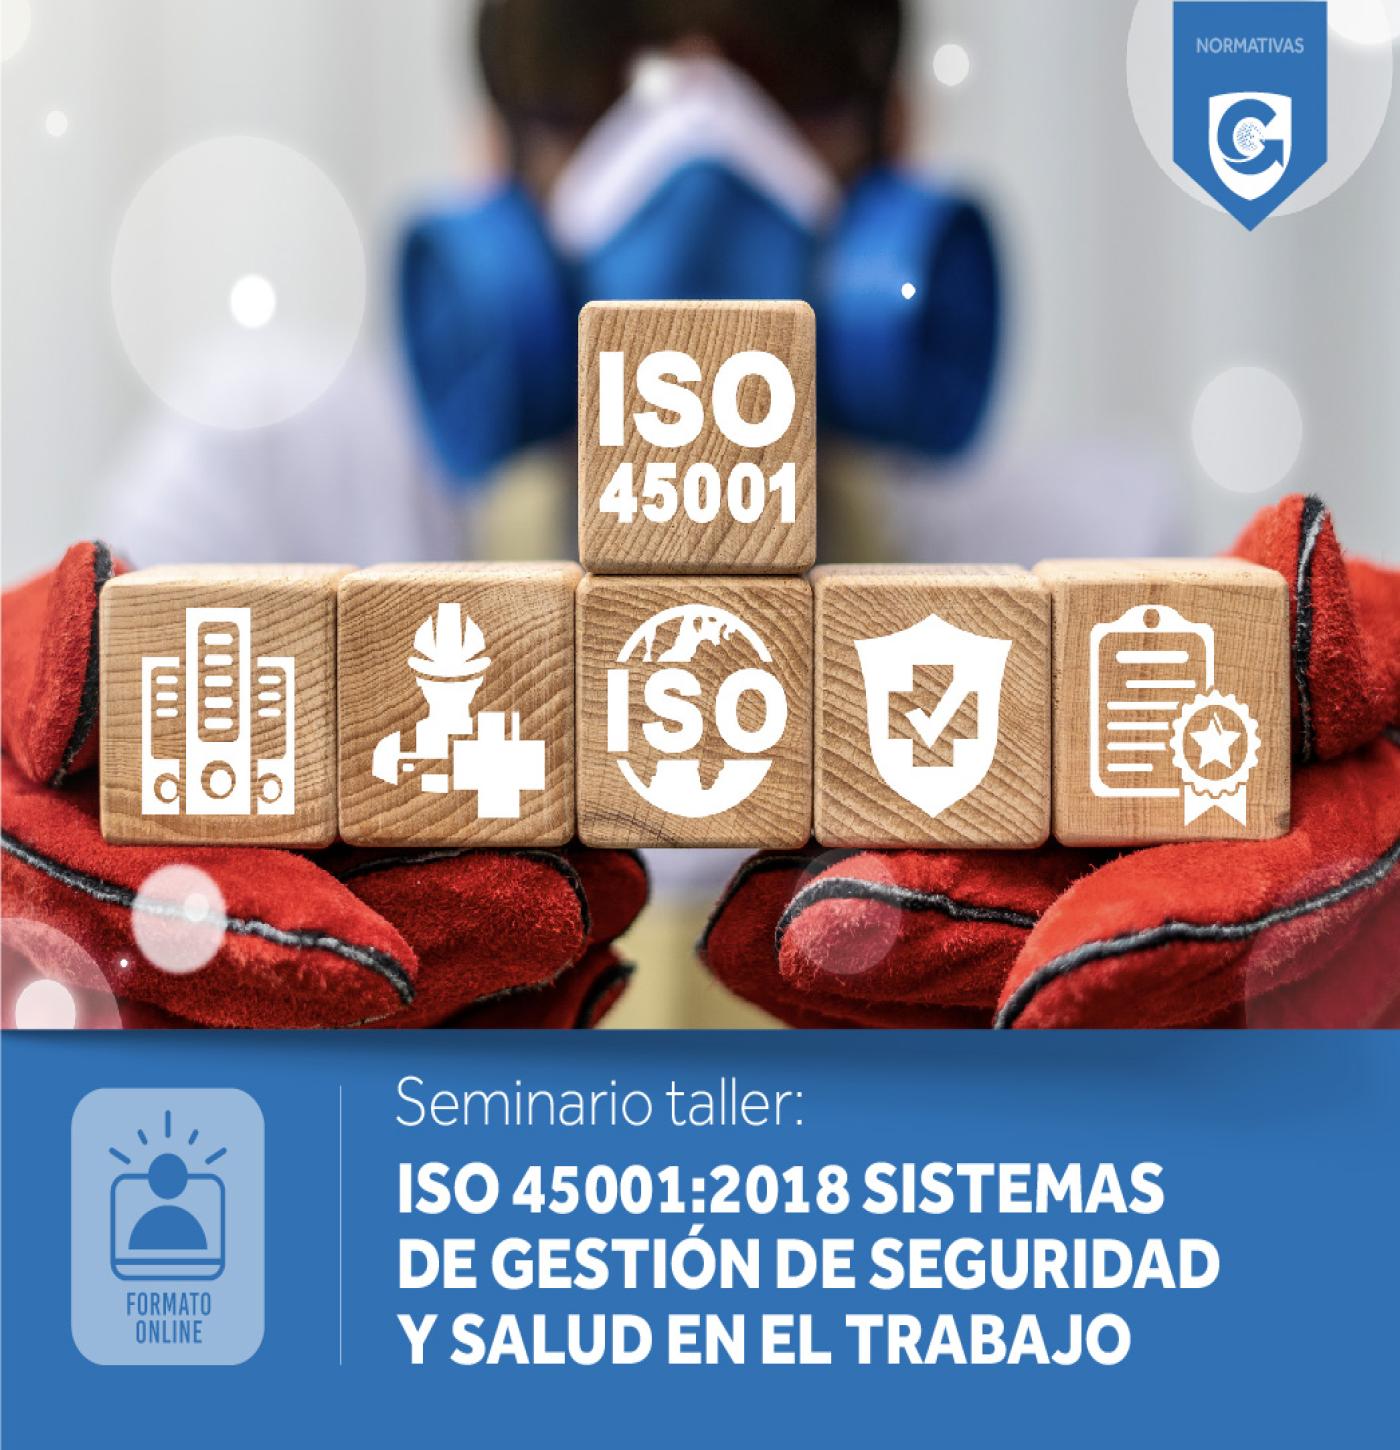 Especialización: ISO 45001:2018 SISTEMAS DE GESTIÓN DE SEGURIDAD Y SALUD EN EL TRABAJO